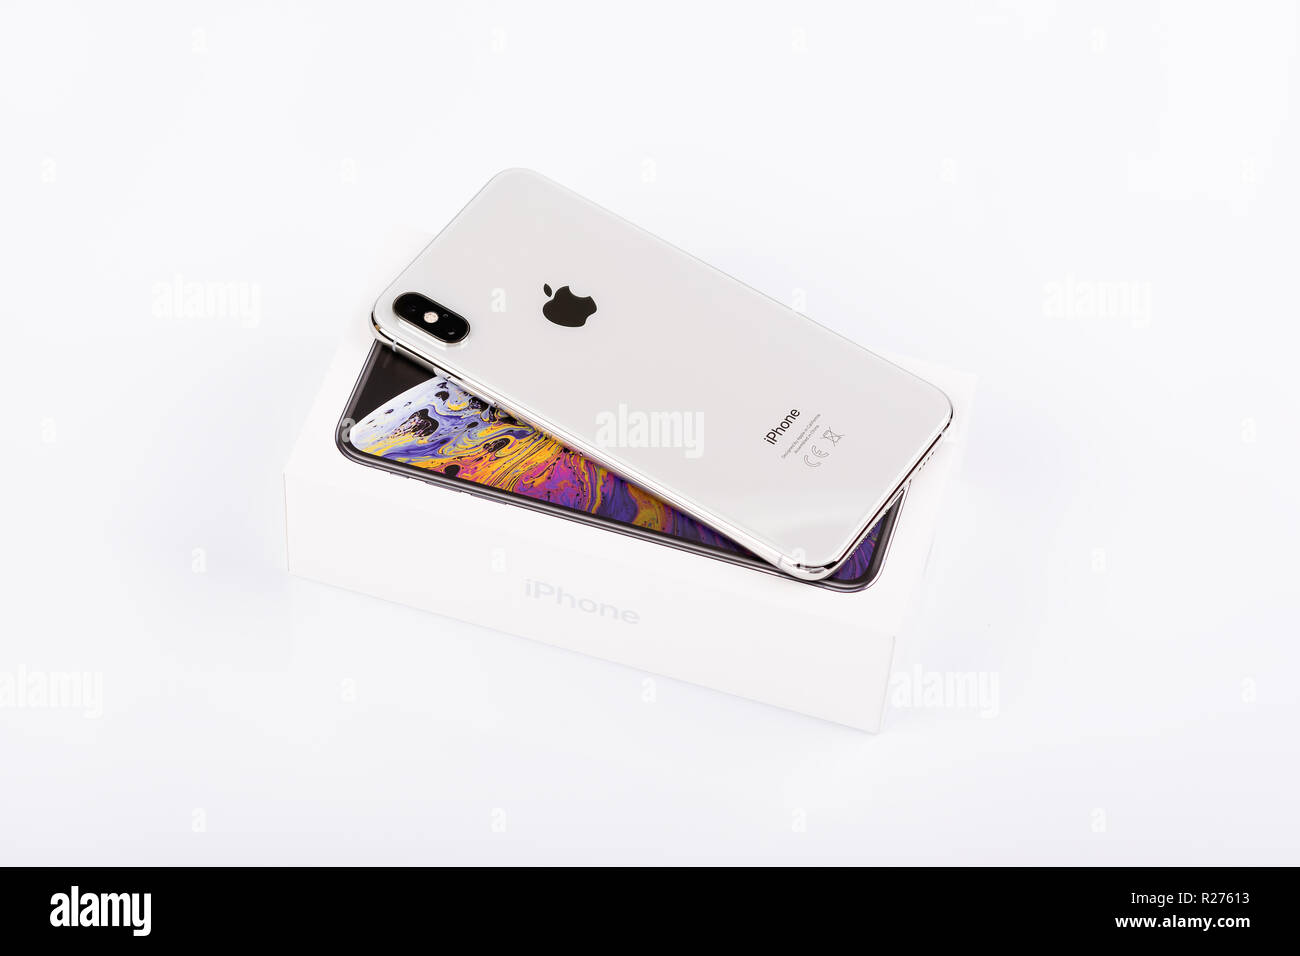 BURGAS, Bulgaria - 8 Novembre 2018: Apple iPhone Xs Max argento su sfondo bianco, vista posteriore. Foto Stock